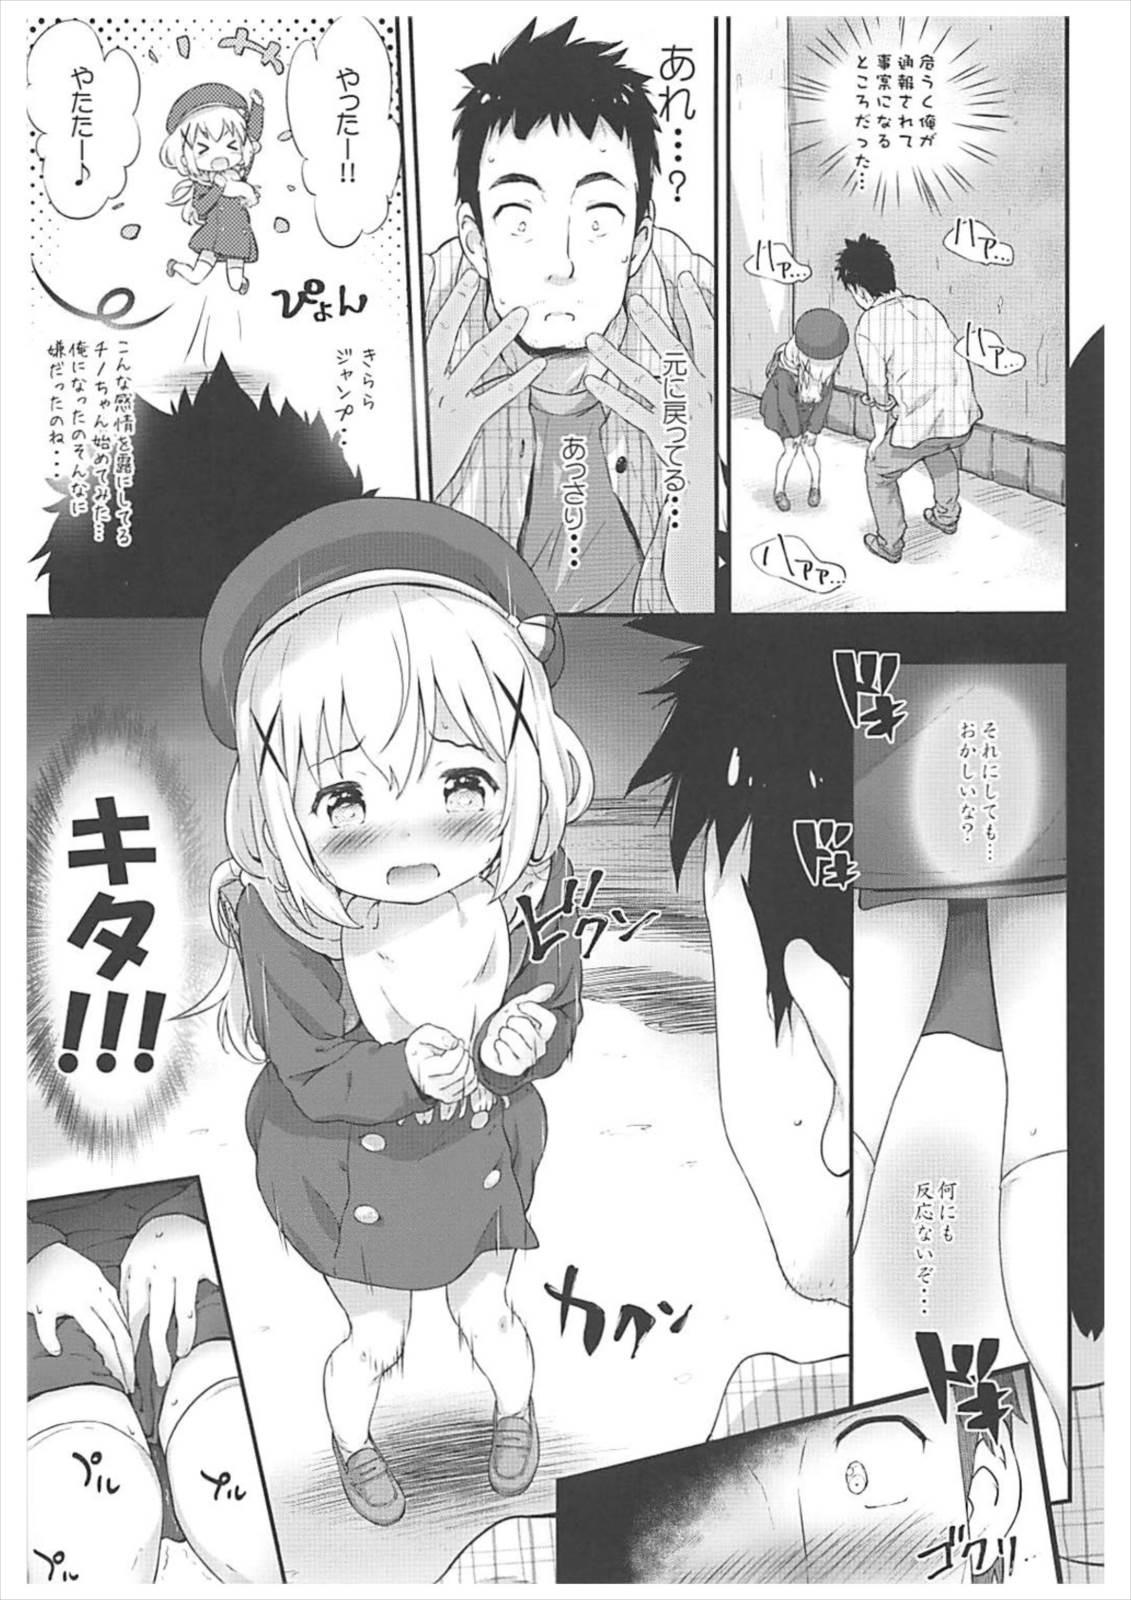 Gostosas Toro Musume 14 Chino-chan Hajimemashita 2 kai - Gochuumon wa usagi desu ka Tinytits - Page 6